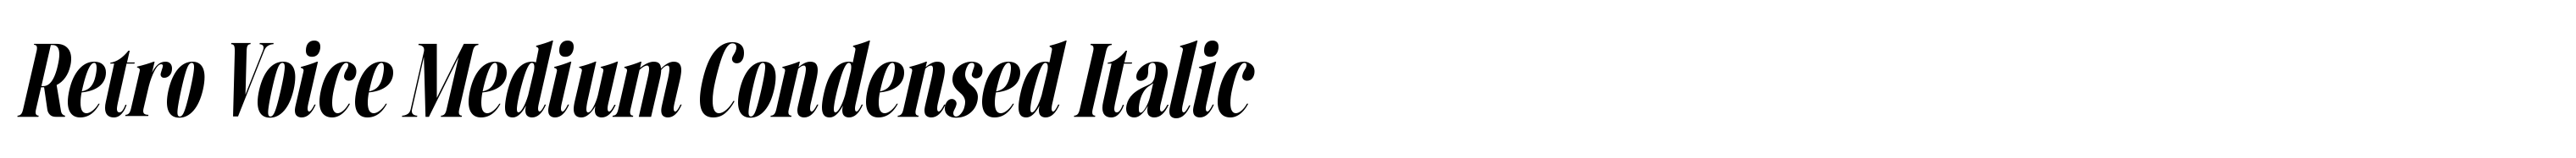 Retro Voice Medium Condensed Italic